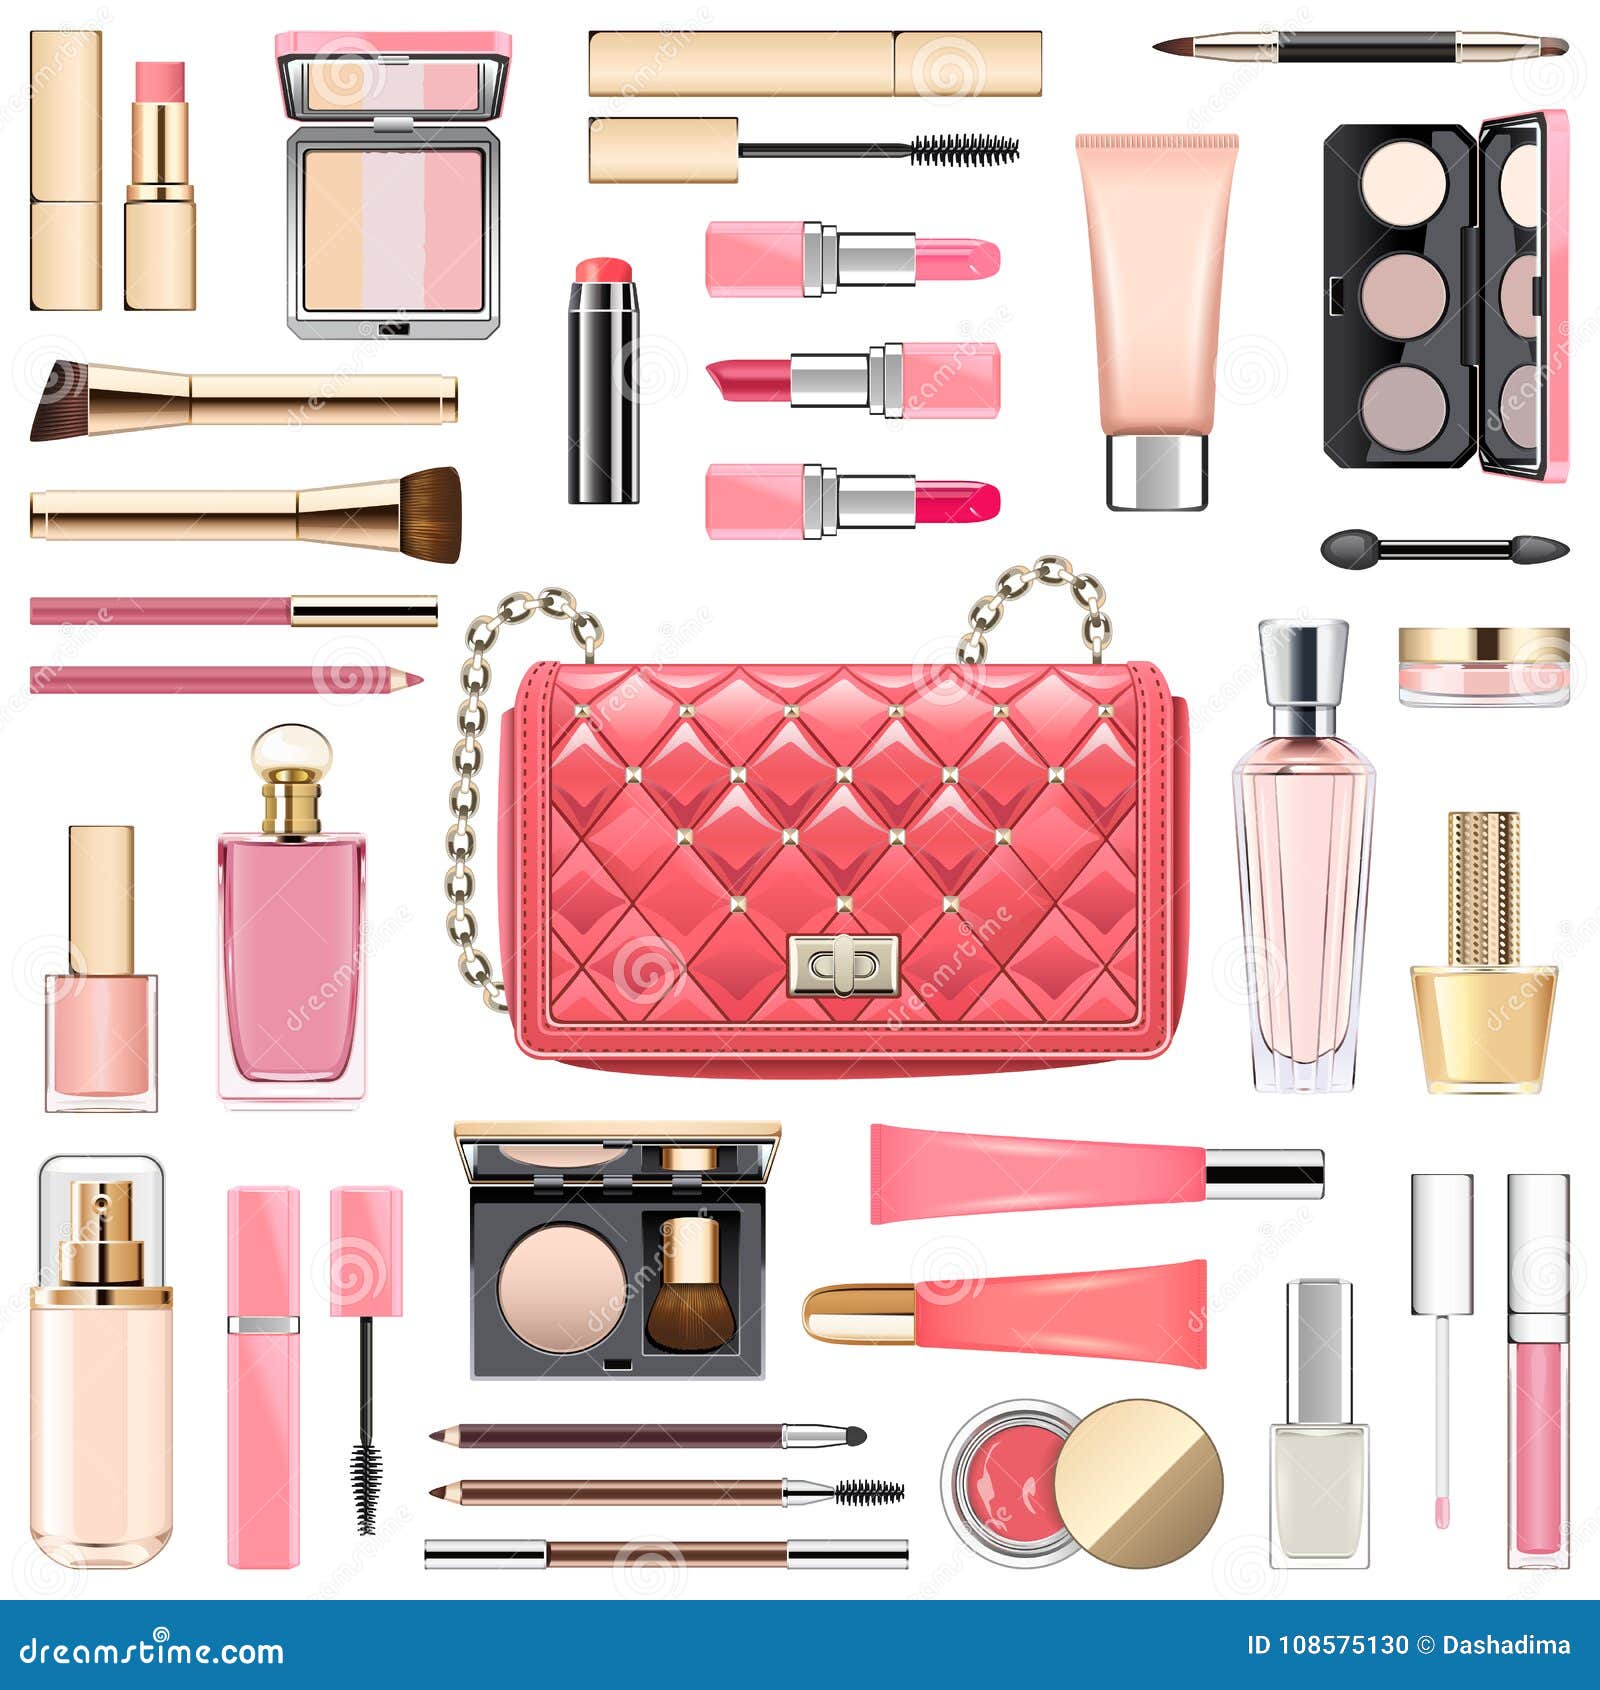  makeup cosmetics with pink handbag